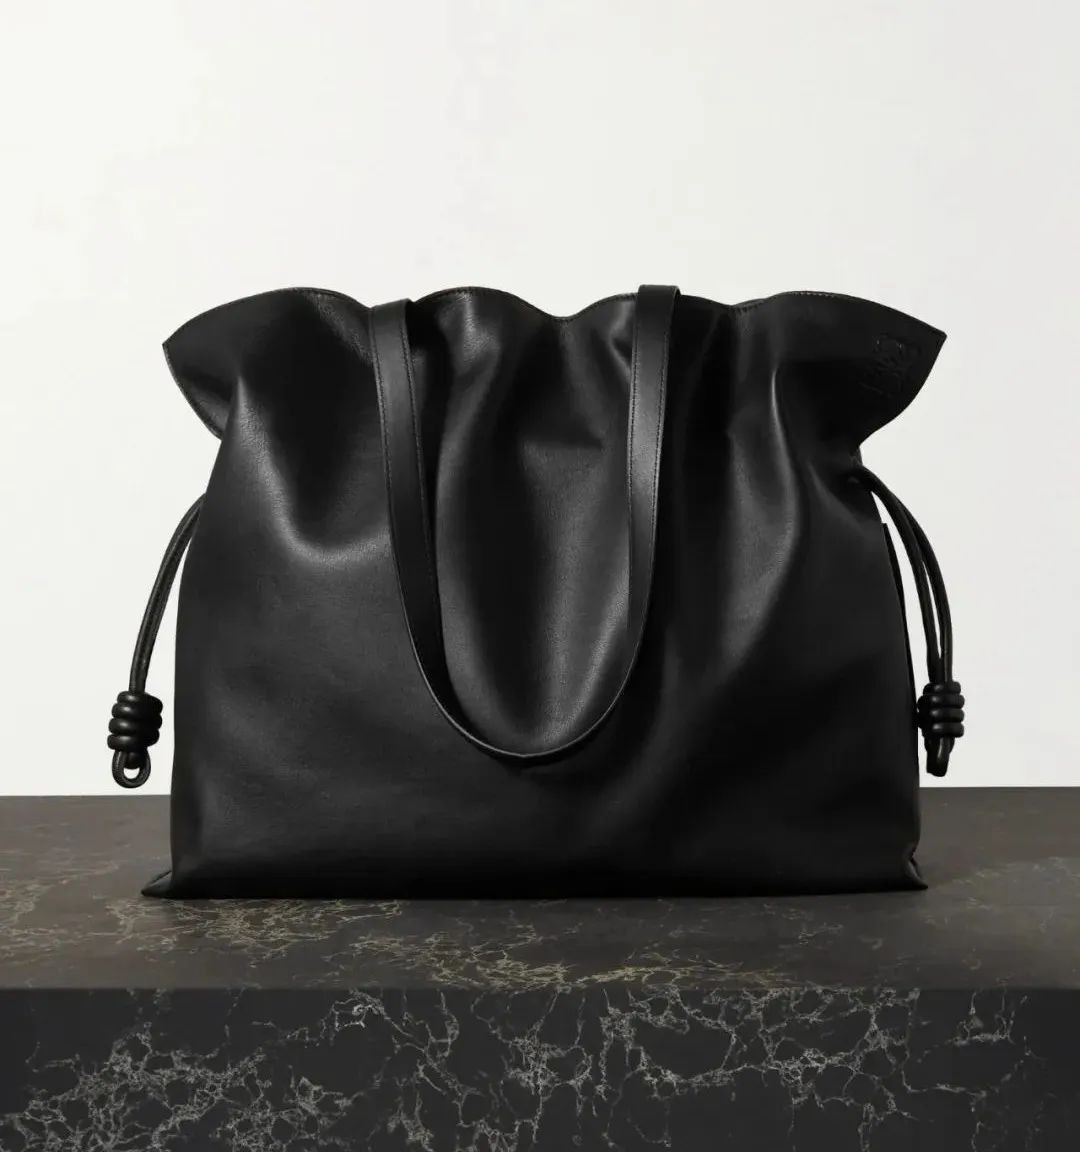 ტოპ 8 დიდი დიზაინერის ჩანთა ამ შემოდგომაზე/ზამთრისთვის (2022 განახლებულია) - საუკეთესო ხარისხის ყალბი დიზაინერის ჩანთების მიმოხილვა, Replica designer bag ru